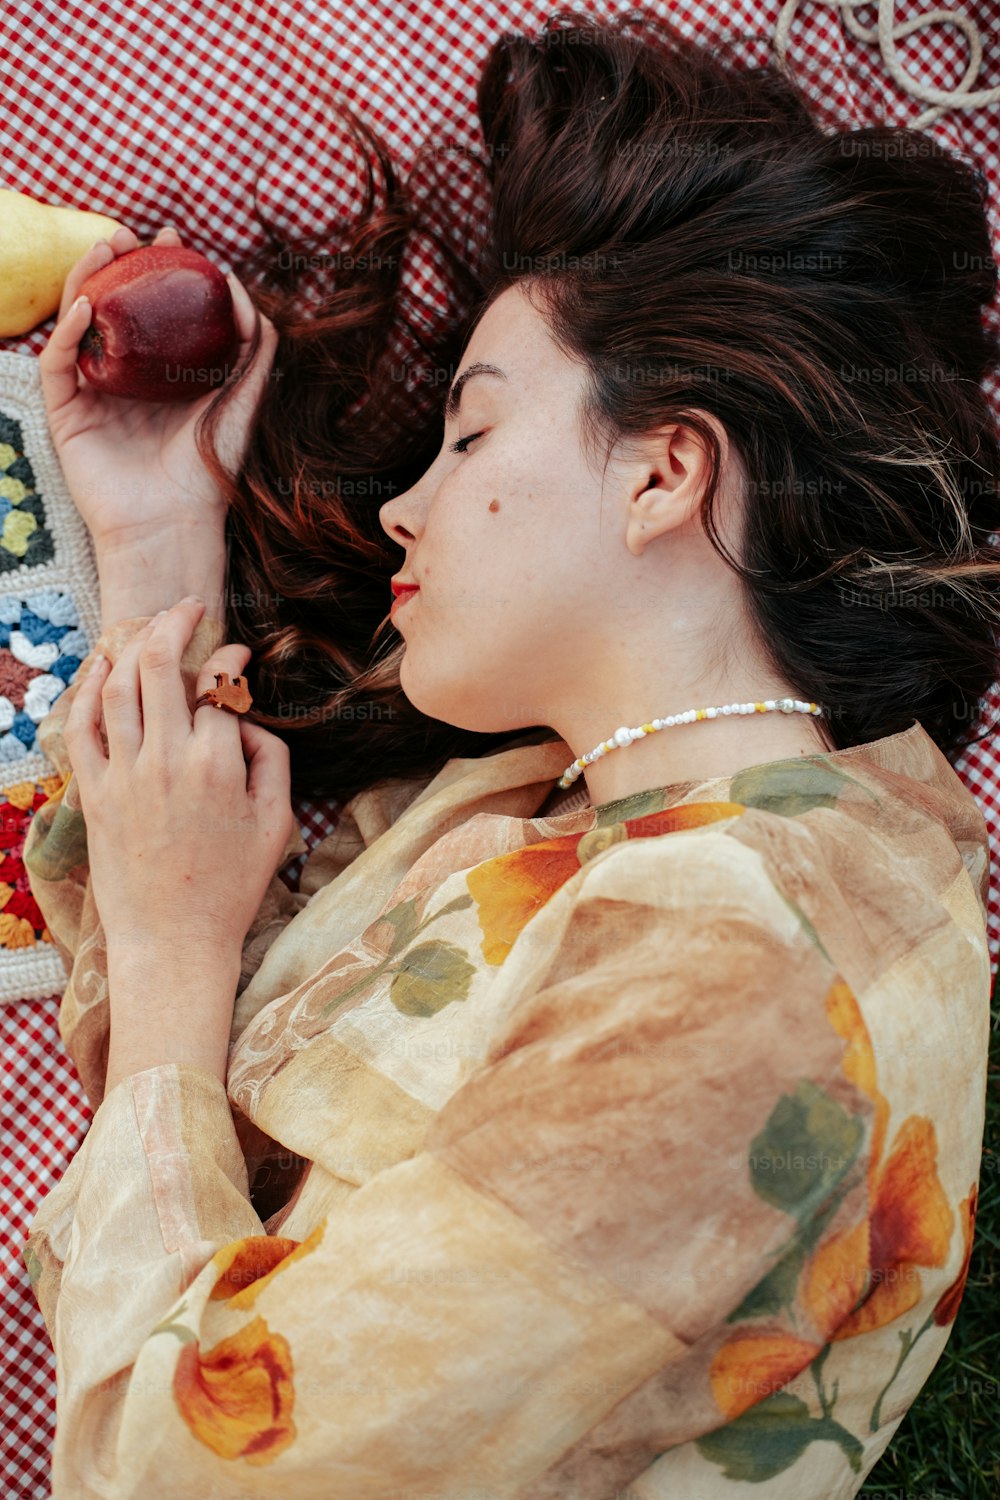 una donna sdraiata su una coperta con in mano una banana e una mela